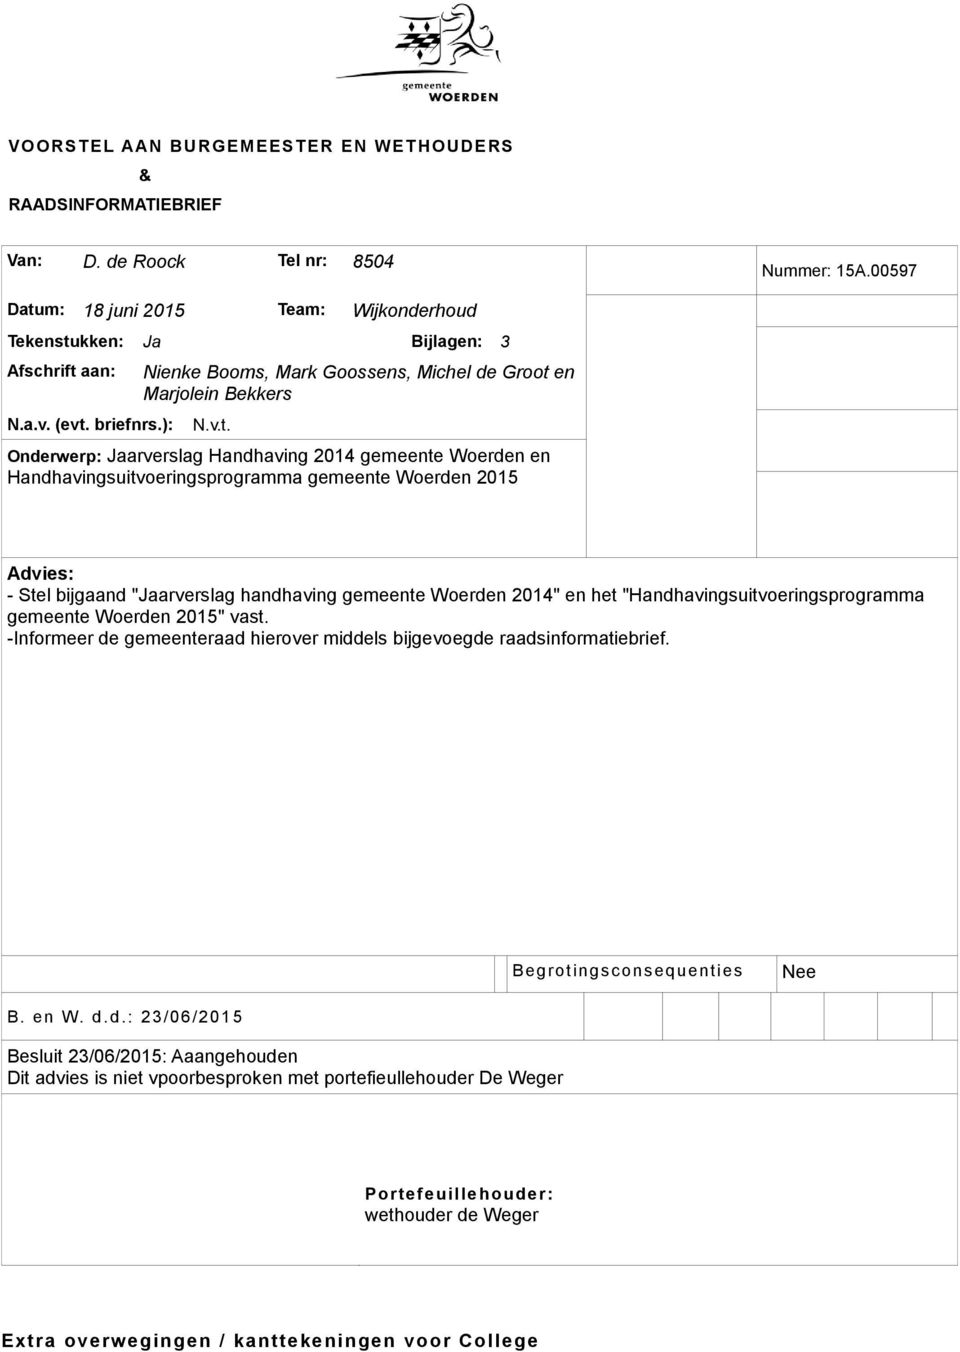 2015 Advies: - Stel bijgaand "Jaarverslag handhaving gemeente Woerden 2014" en het "Handhavingsuitvoeringsprogramma gemeente Woerden 2015" vast.